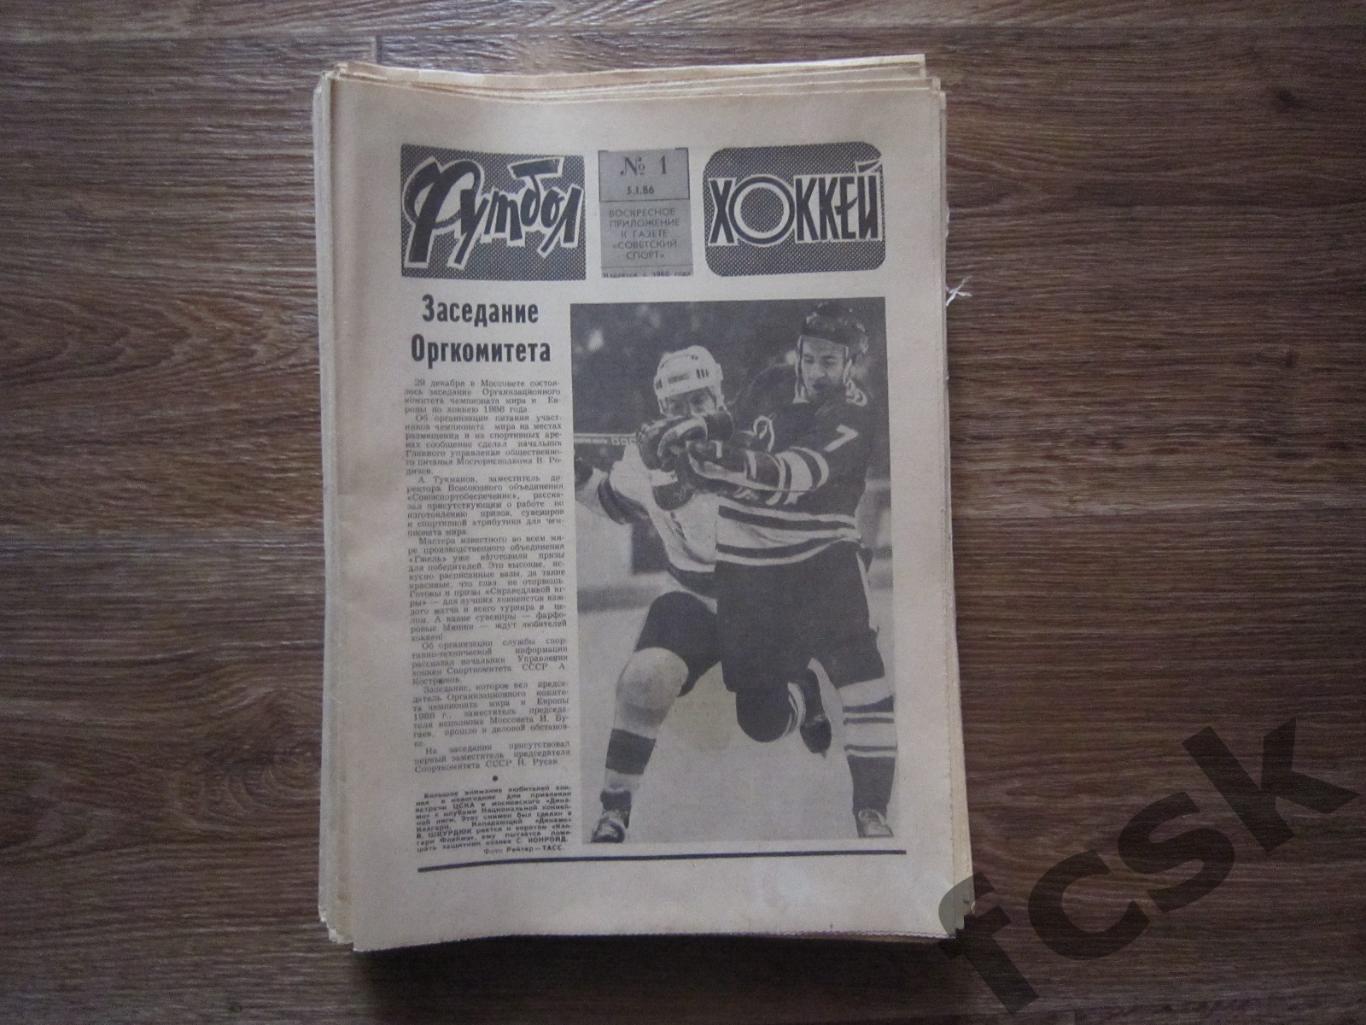 Еженедельник Футбол - Хоккей 1986 Московский выпуск Полный комплект!